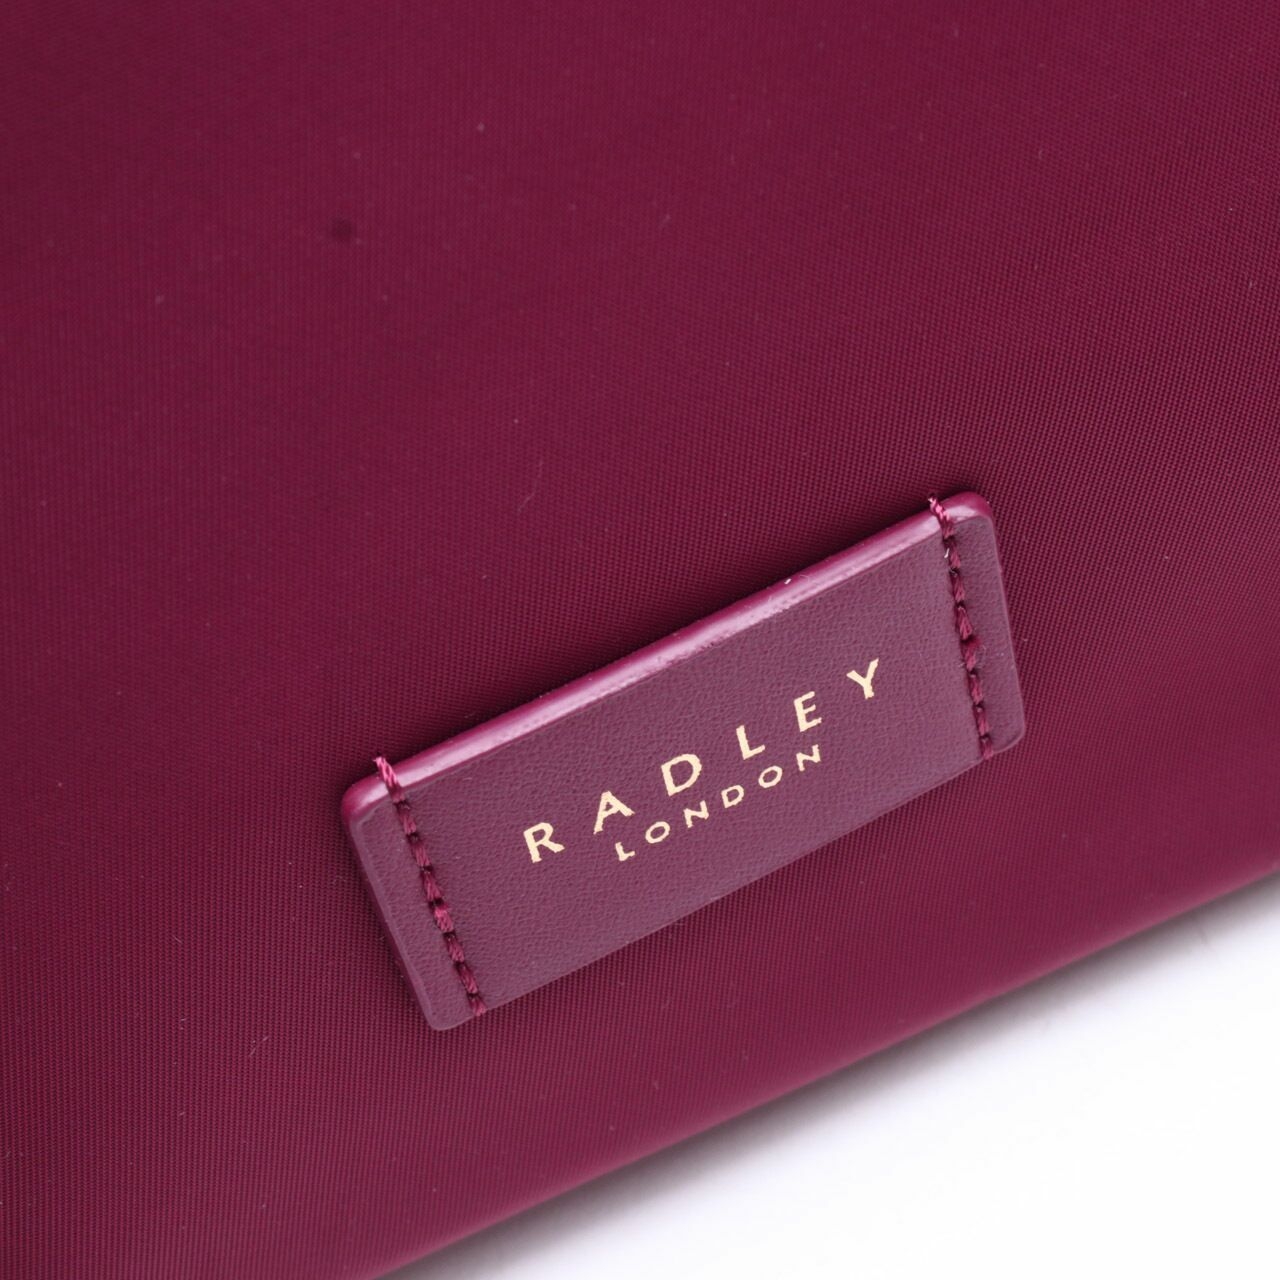 Radley London Pocket Essential Merlot Maroon Satchel